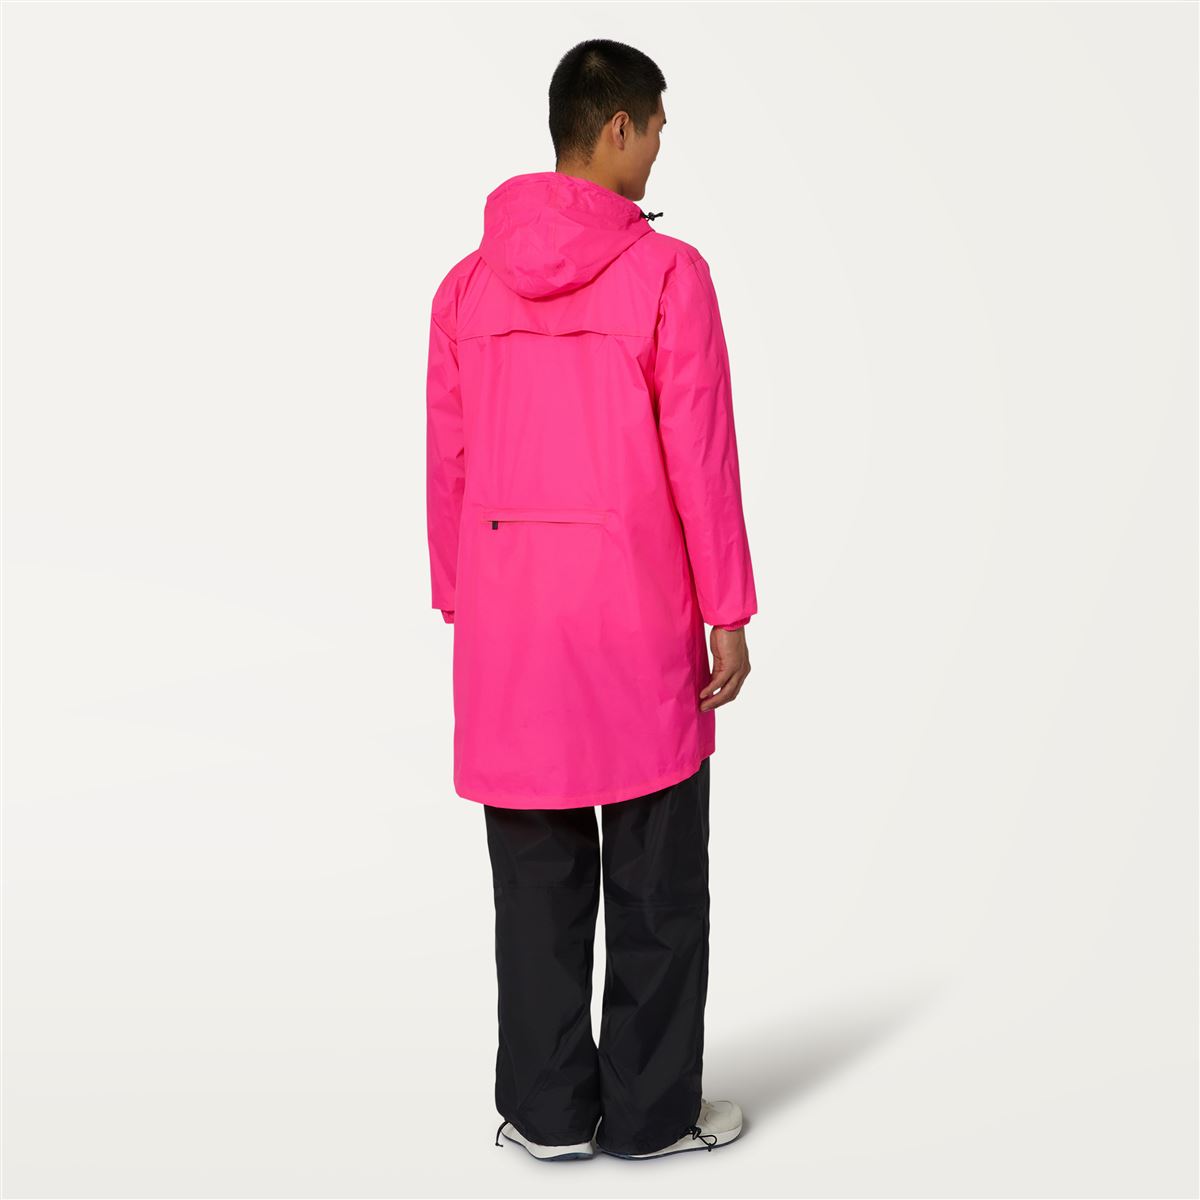 Eiffel - Unisex Waterproof Packable Long Rain Jacket in Pink Intense